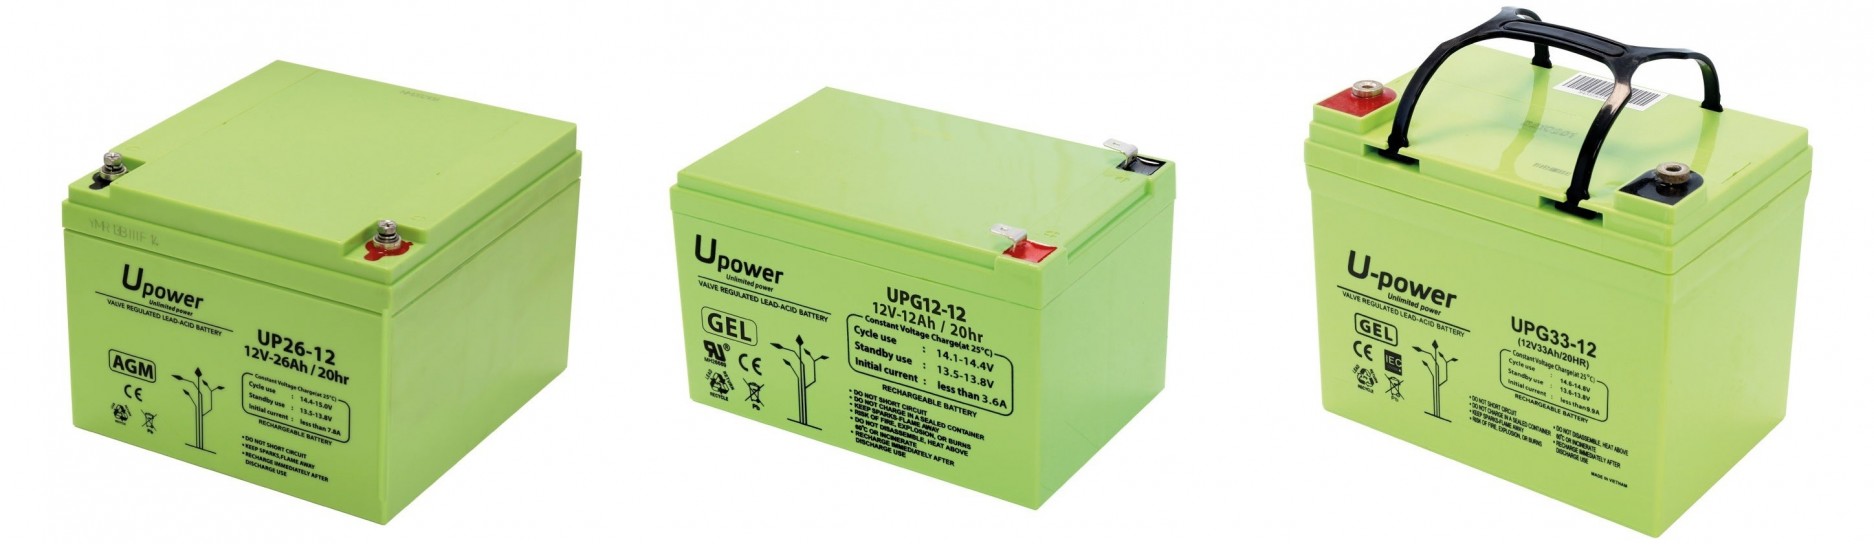 Baterías de Plomo U-POWER | Comprar Baterías de Plomo U-POWER